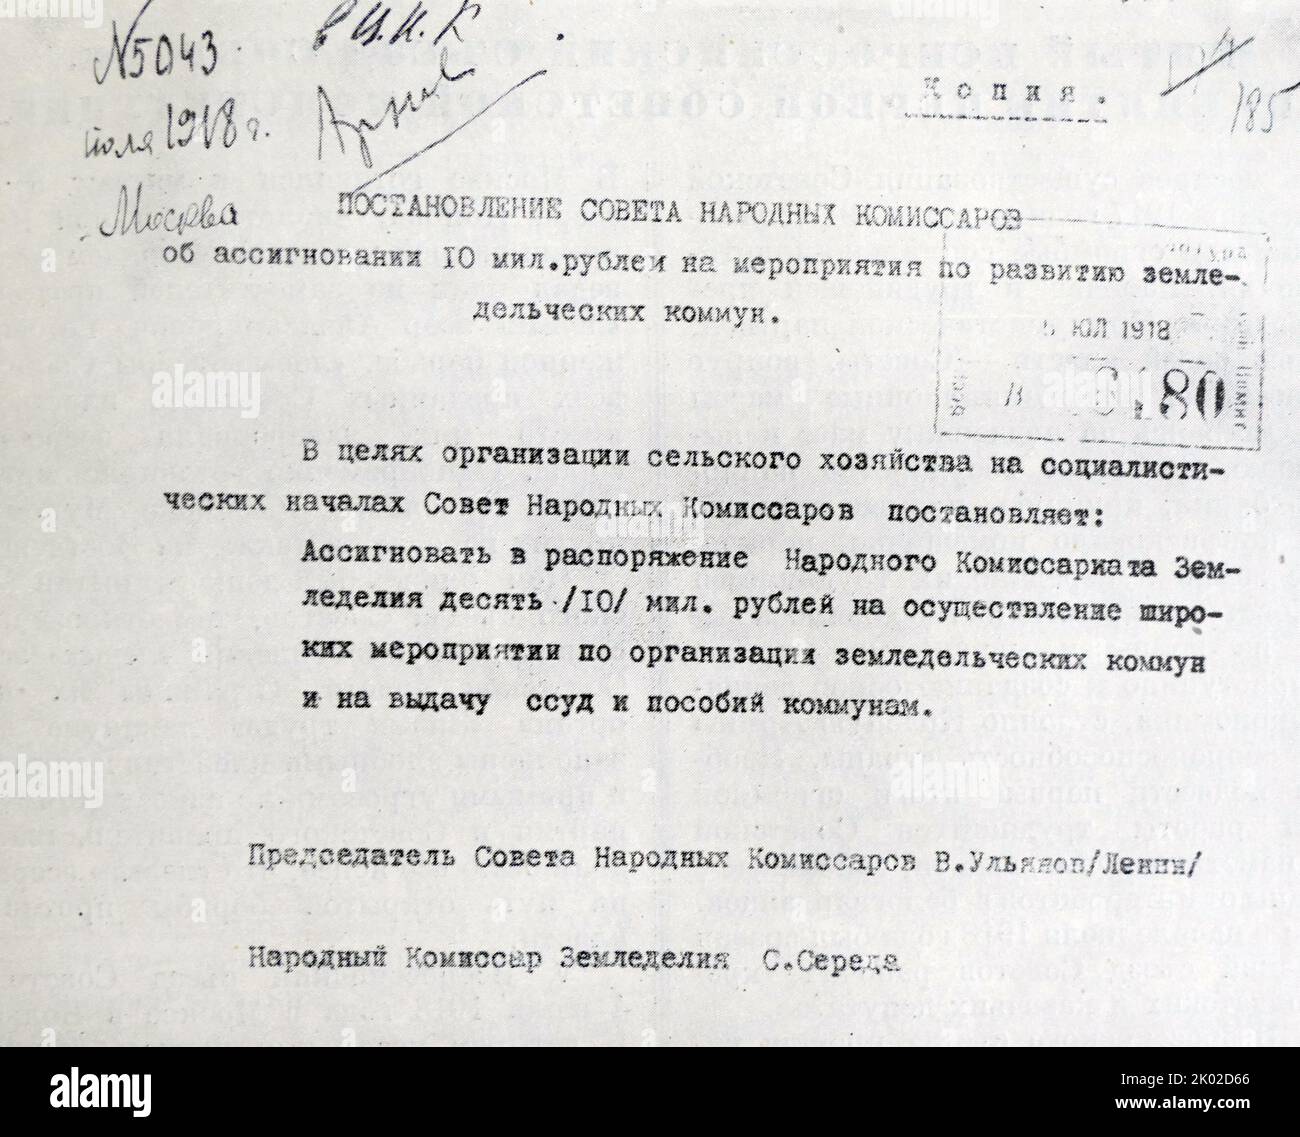 Orden de Sovnarcoms sobre la asignación de 10 millones de rublos para los eventos agrícolas socialistas. Julio de 1918.&#13;&#10; Foto de stock